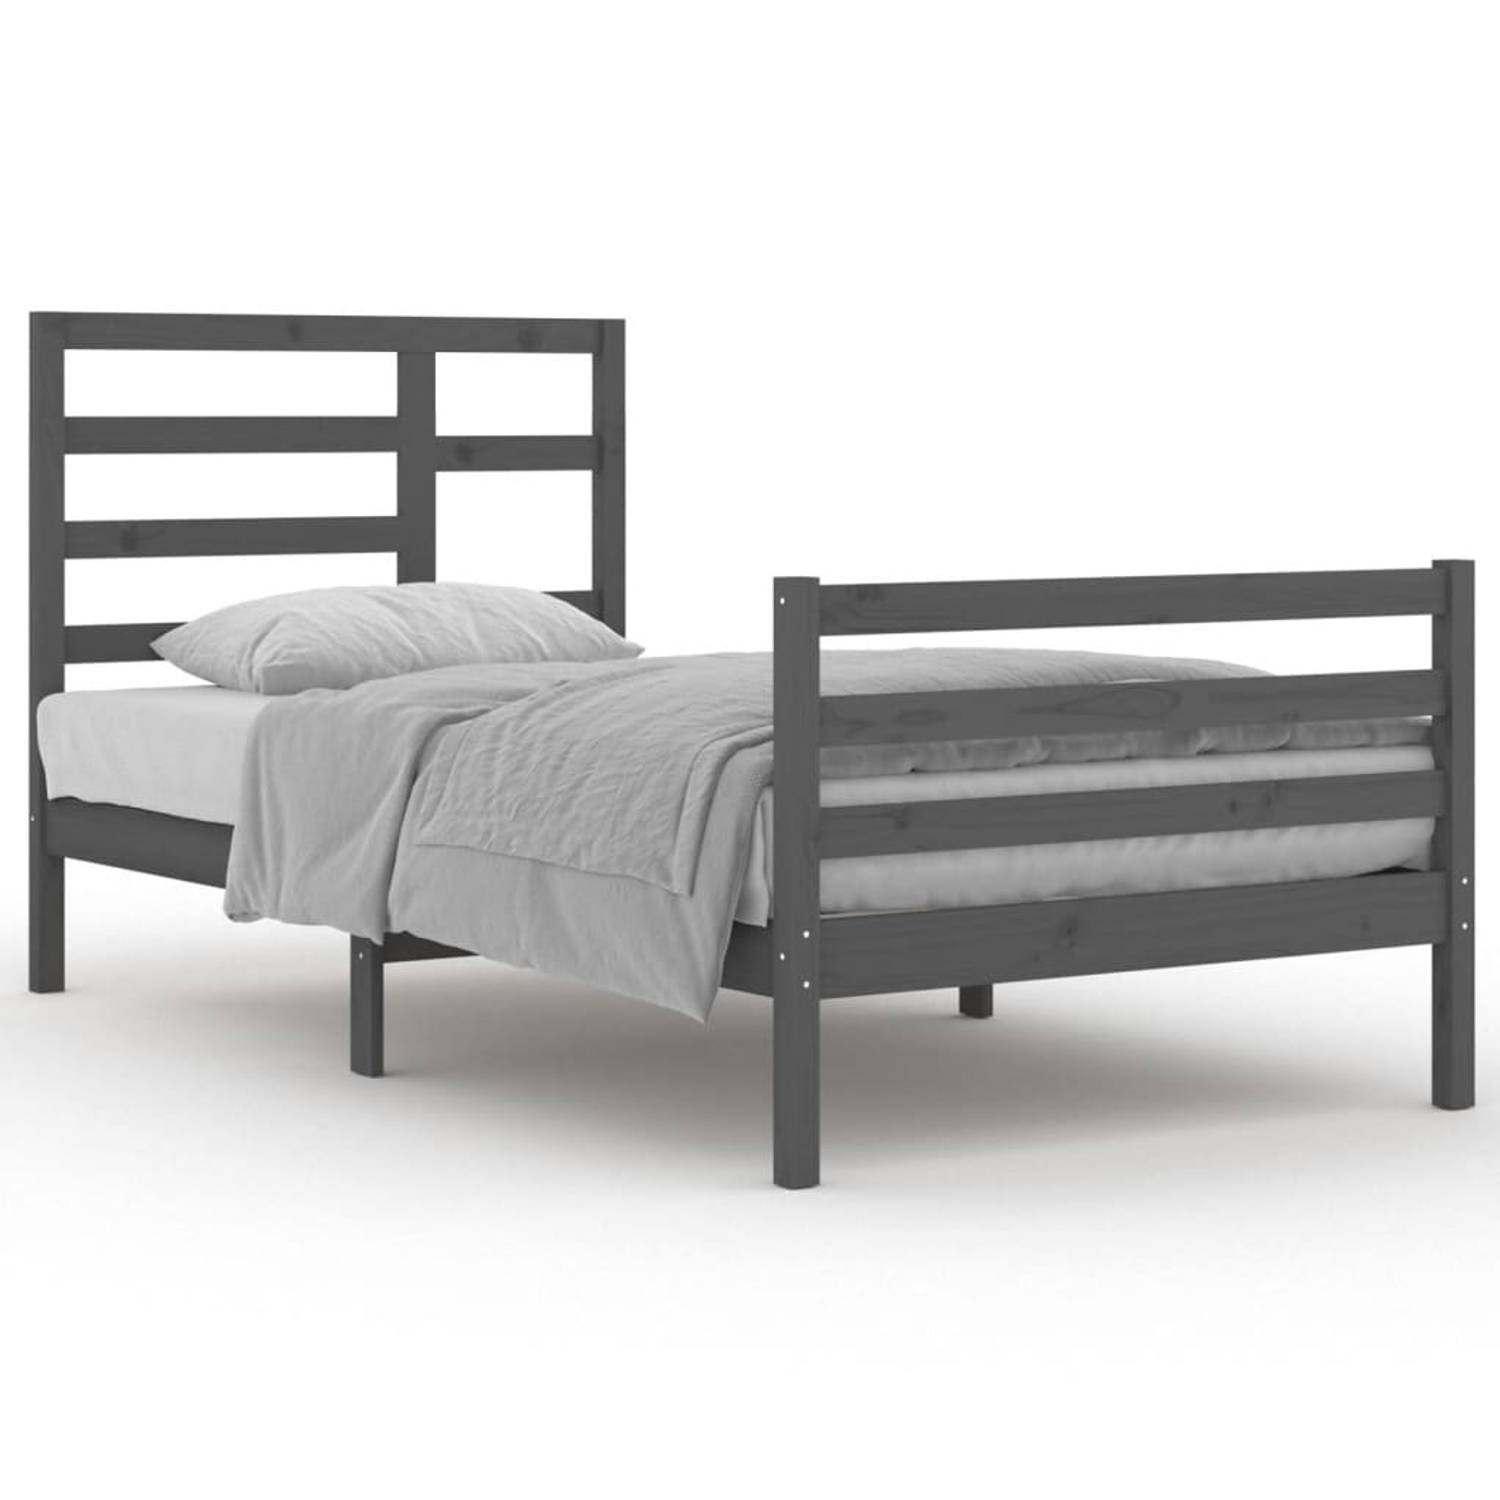 The Living Store Bedframe massief hout grijs 100x200 cm - Bedframe - Bedframes - Bed - Bedbodem - Ledikant - Bed Frame - Massief Houten Bedframe - Slaapmeubel - Eenpersoonsbed - Be